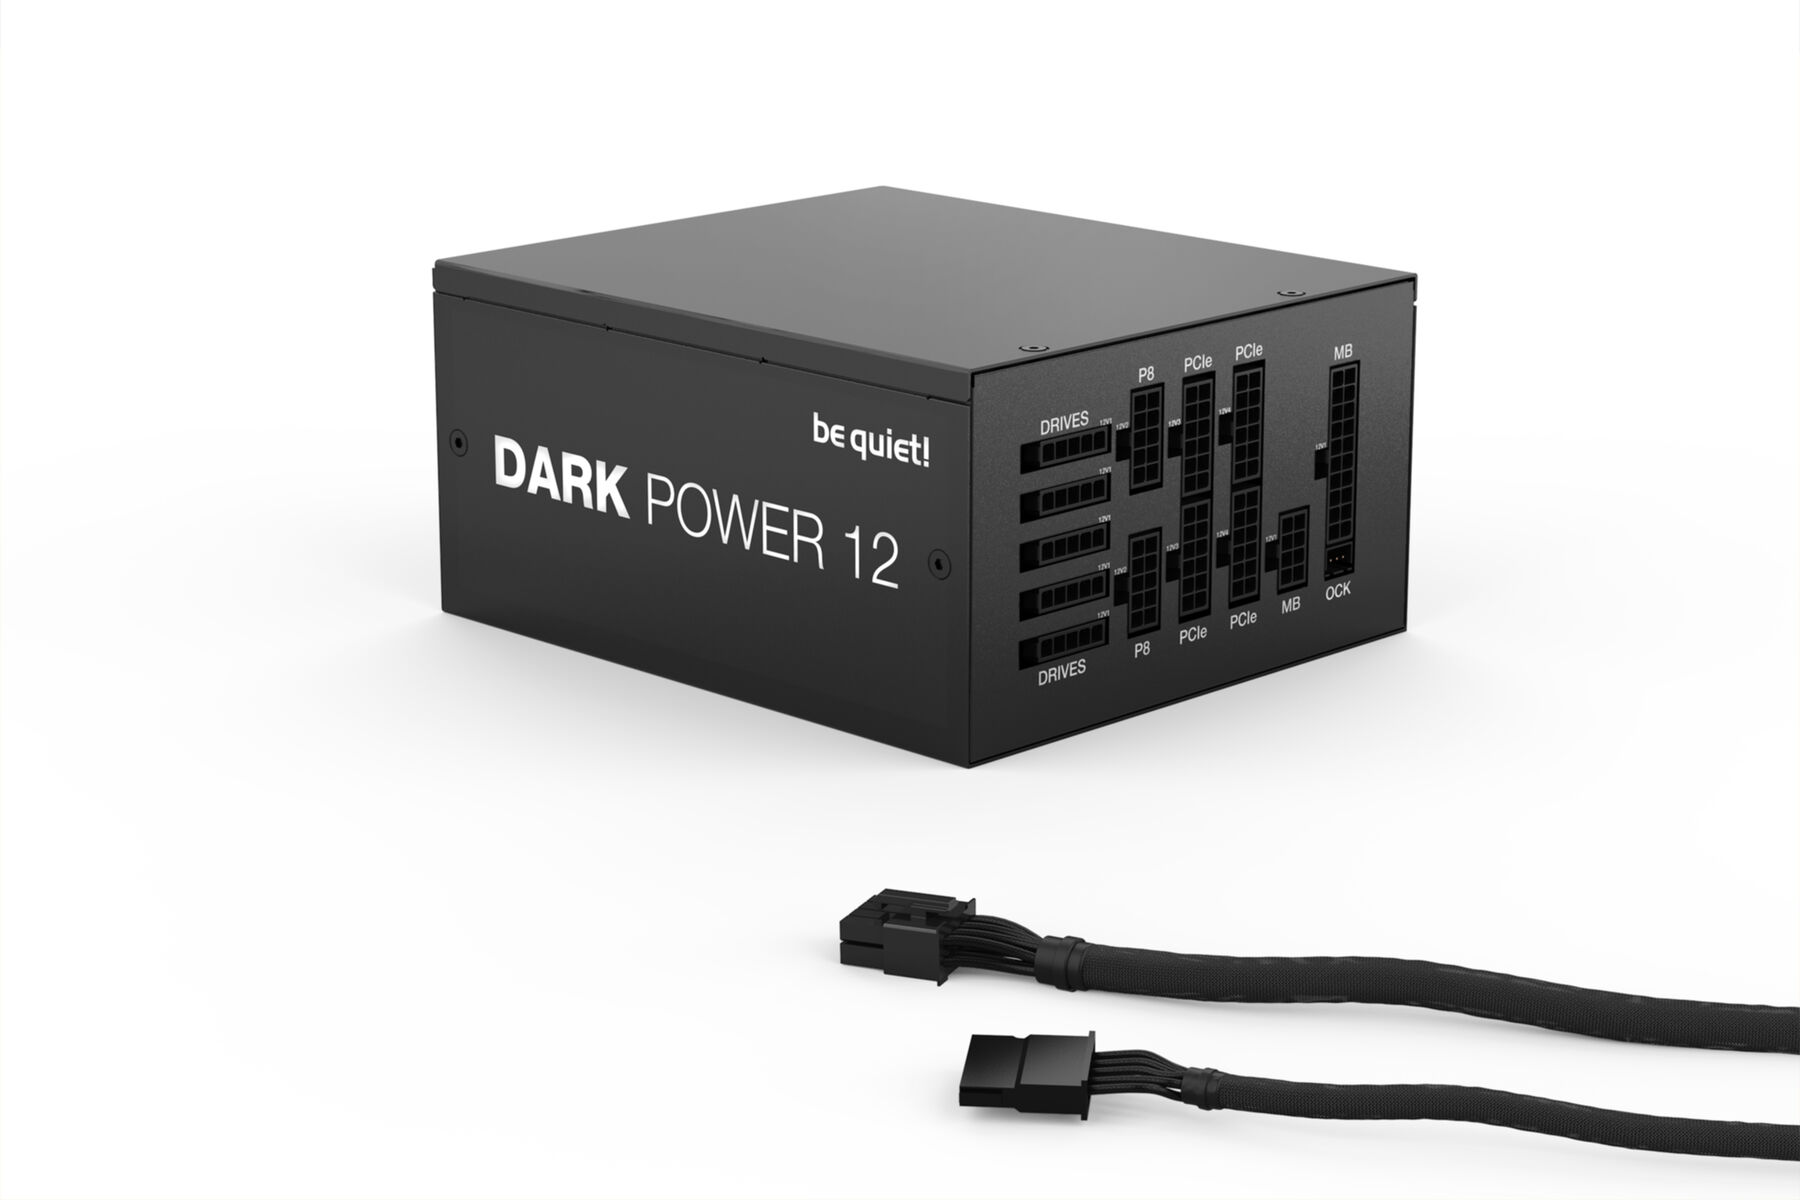 Power Dark 12 BE 850W 850 Watt Netzteil QUIET! PC